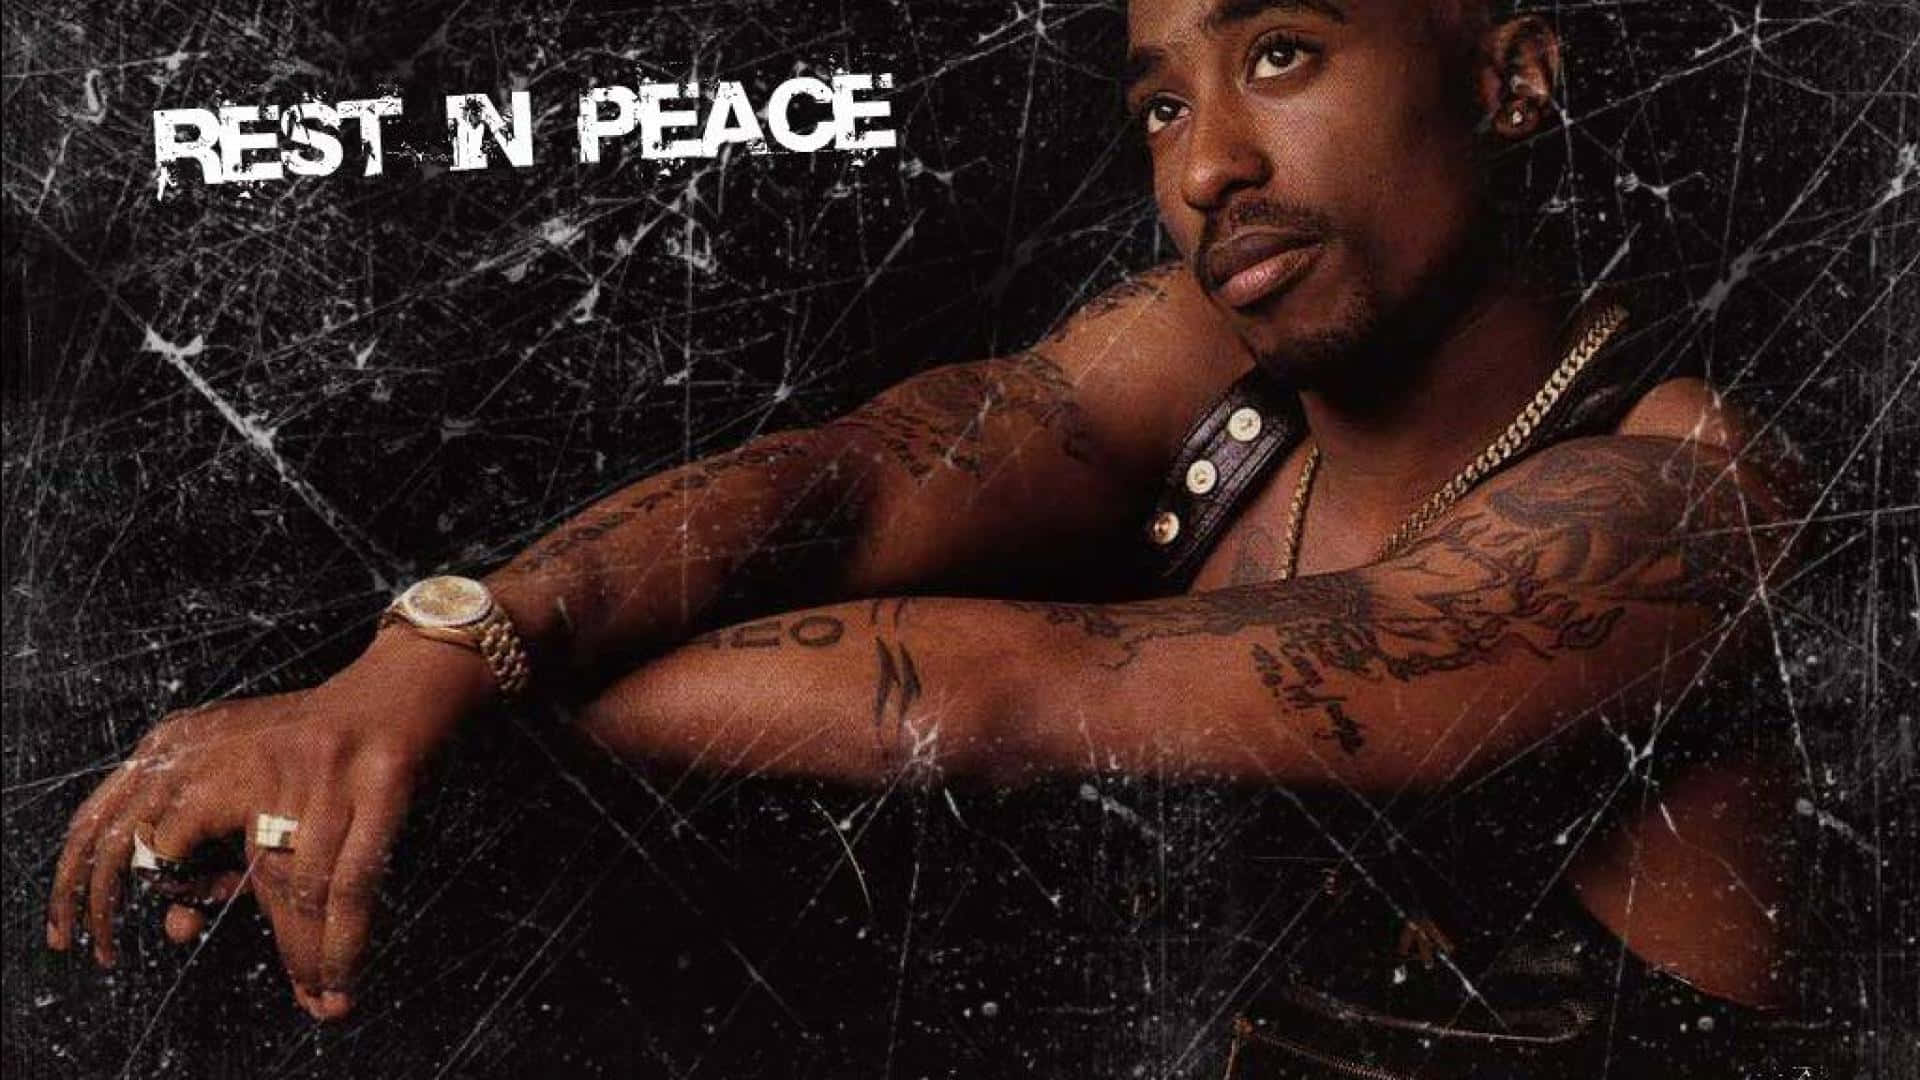 Tupac Shakur - Legendary Rapper and Poet